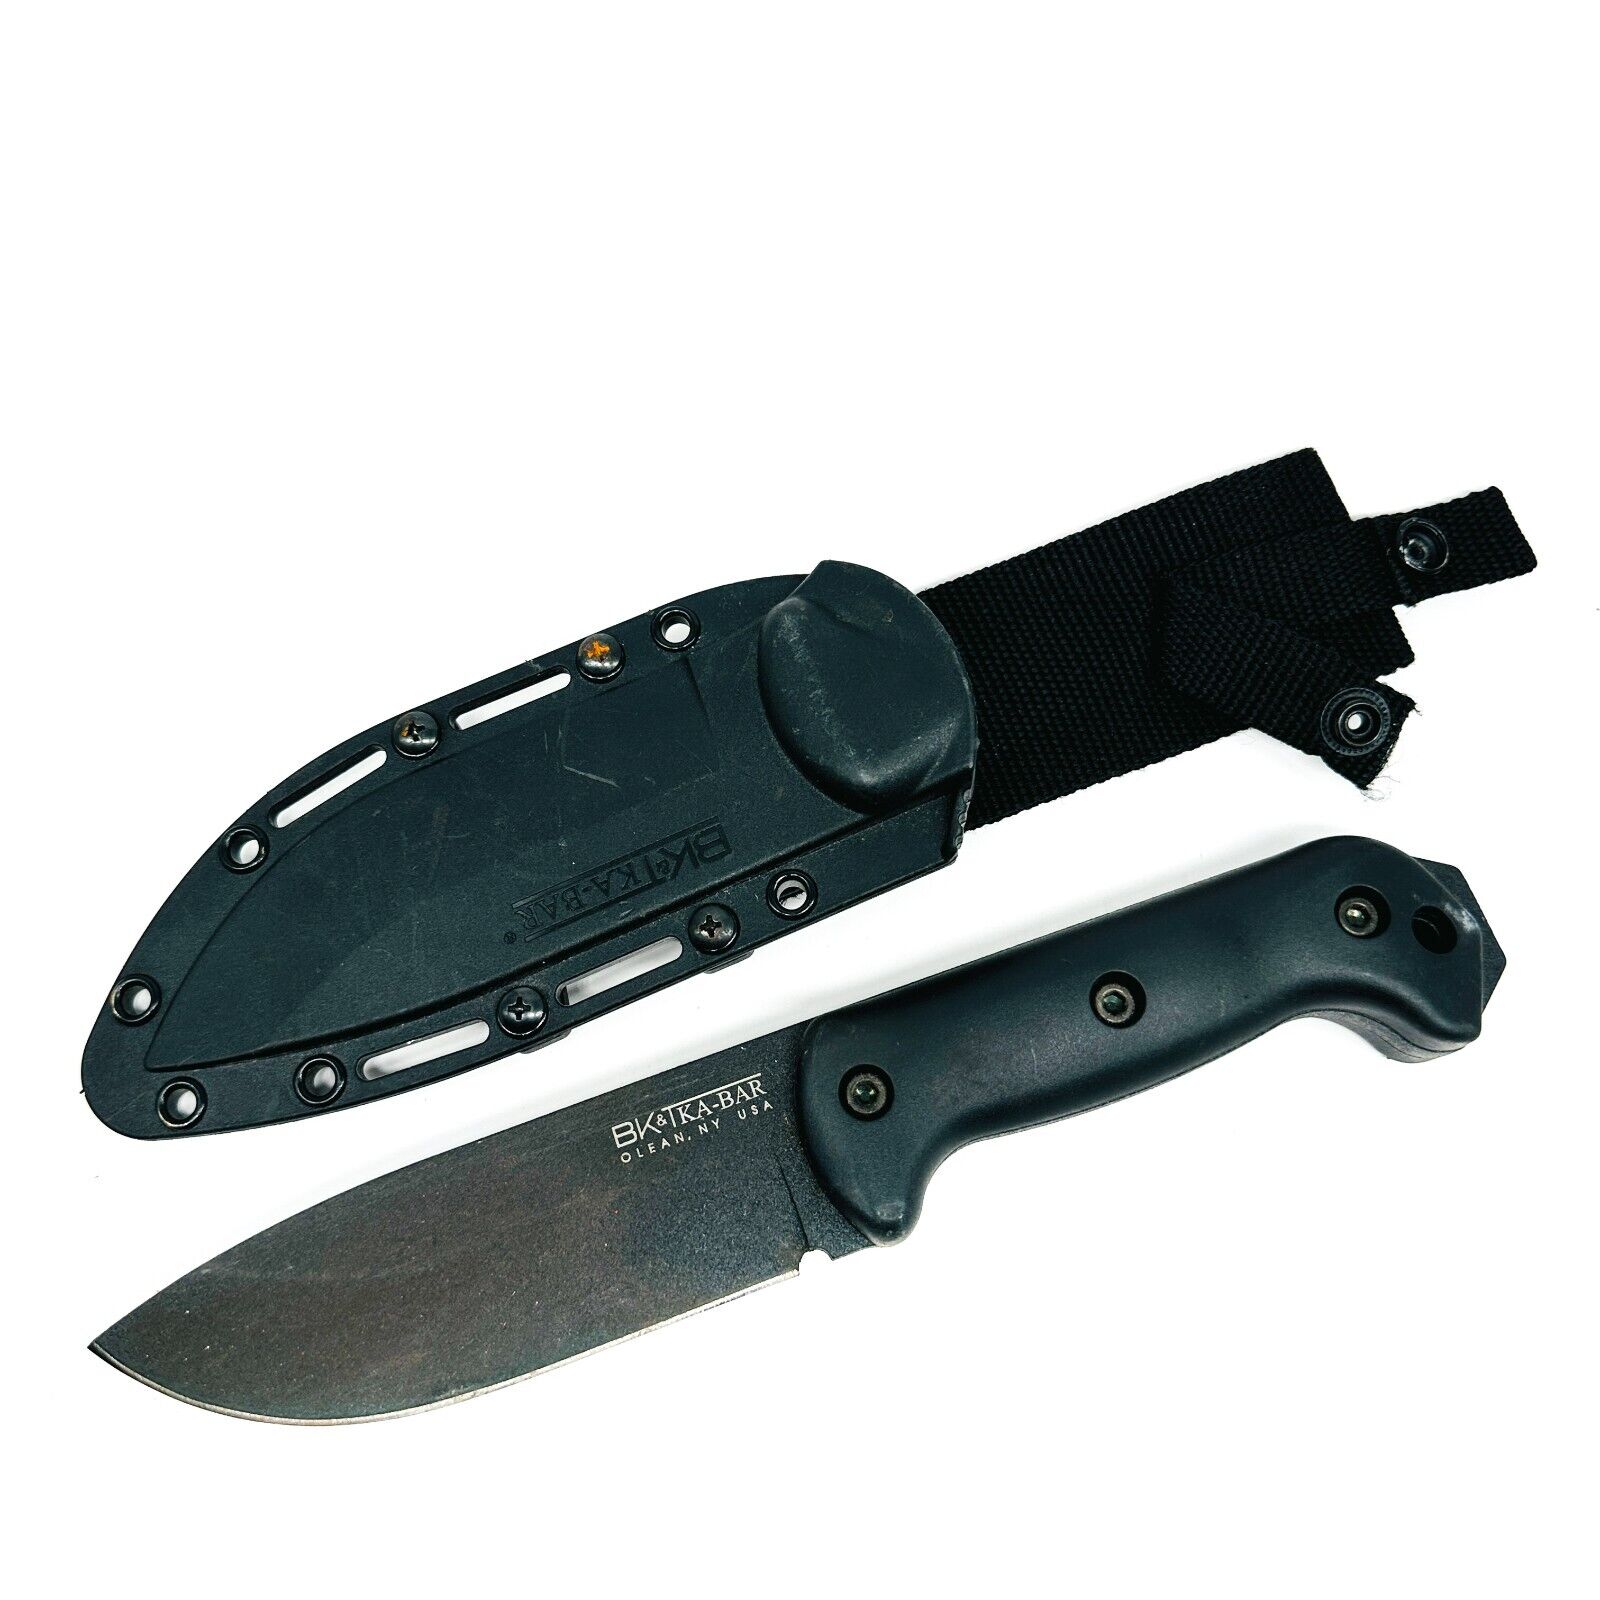 BK & T Kabar Campanion BK2 Fixed Blade Knife w/ Original Sheath, Made in USA